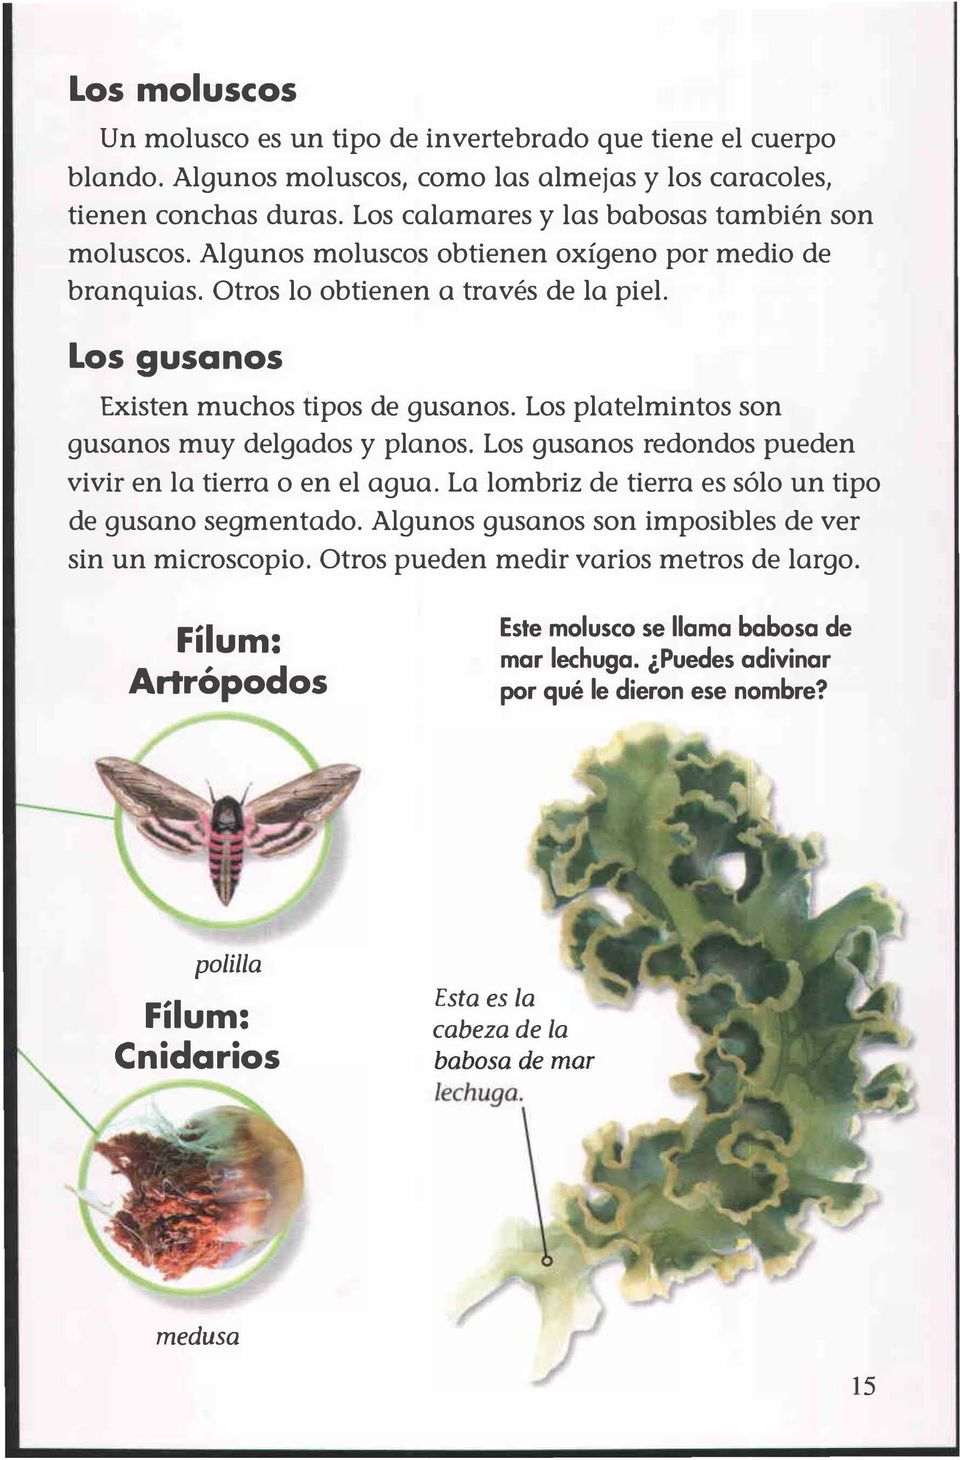 Los platelmintos son gusanos muy delgados y planos. Los gusanos redondos pueden vivir en la tierra o en el agua. La lombriz de tierra es sólo un tipo de gusano segmentado.